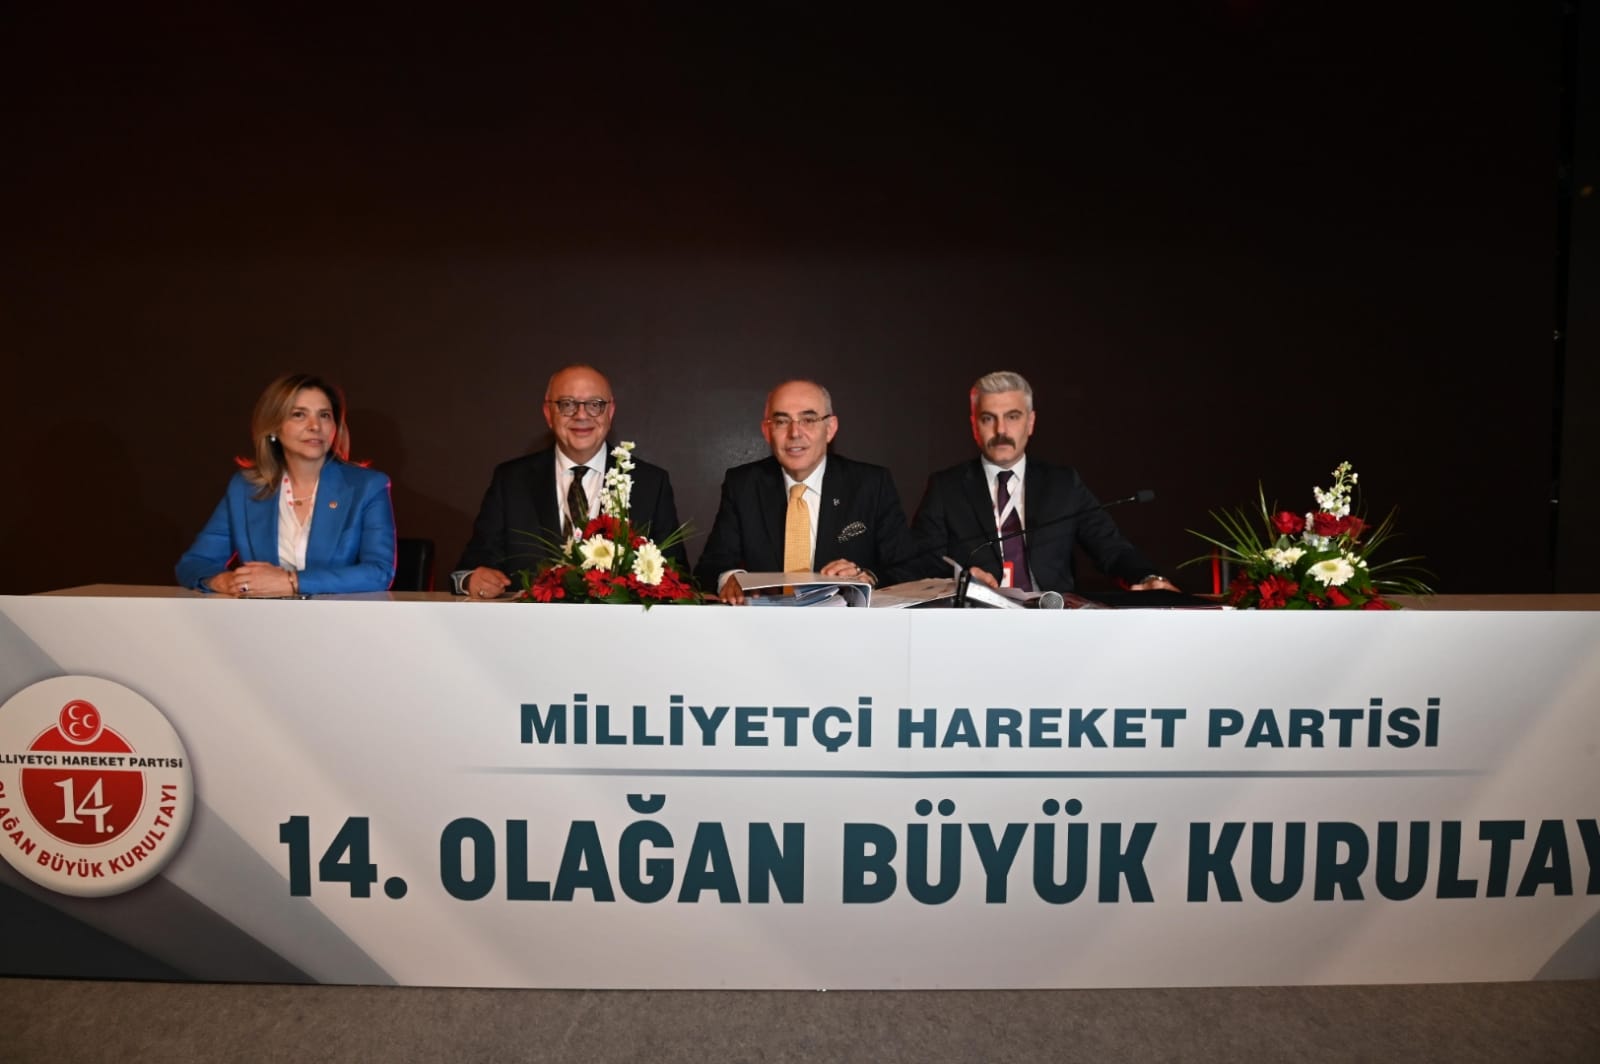 MHP Lideri Devlet Bahçeli Yeniden Genel Başkanlığa Seçildi